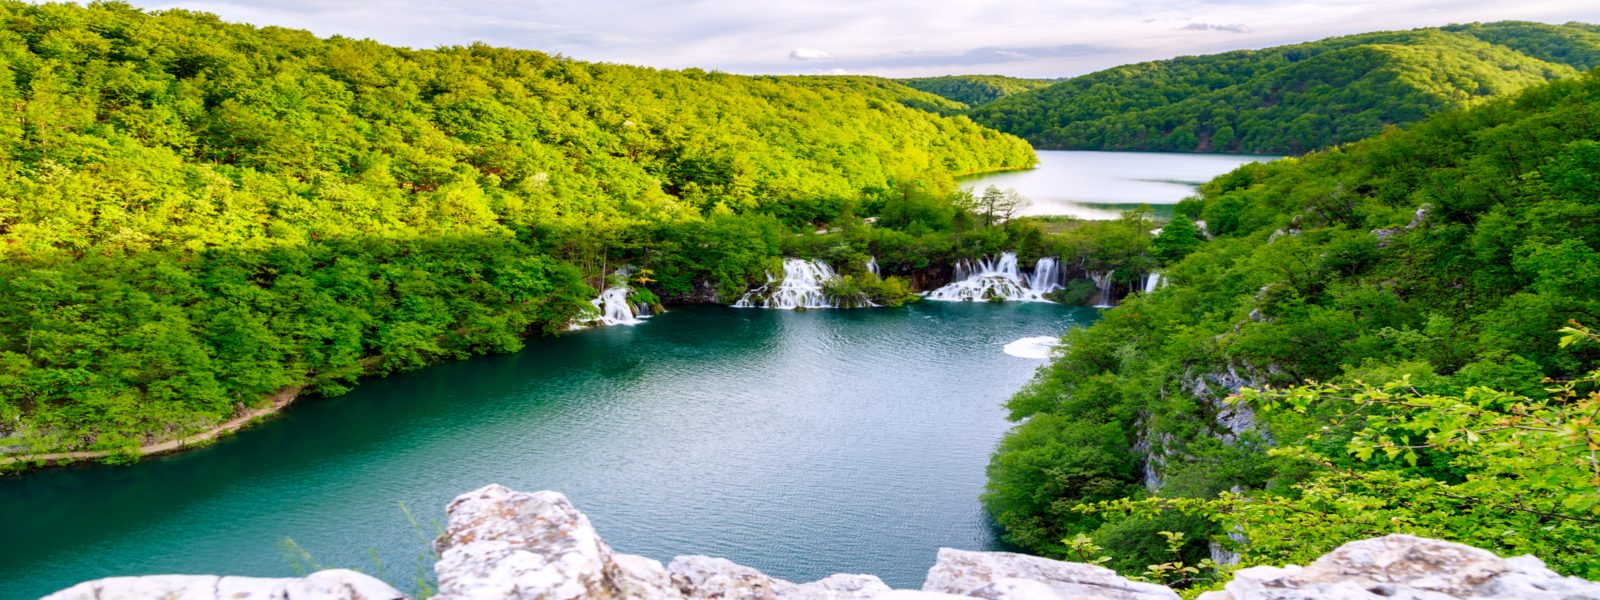 Plitvicei-tavak Nemzeti Park, Horvátország